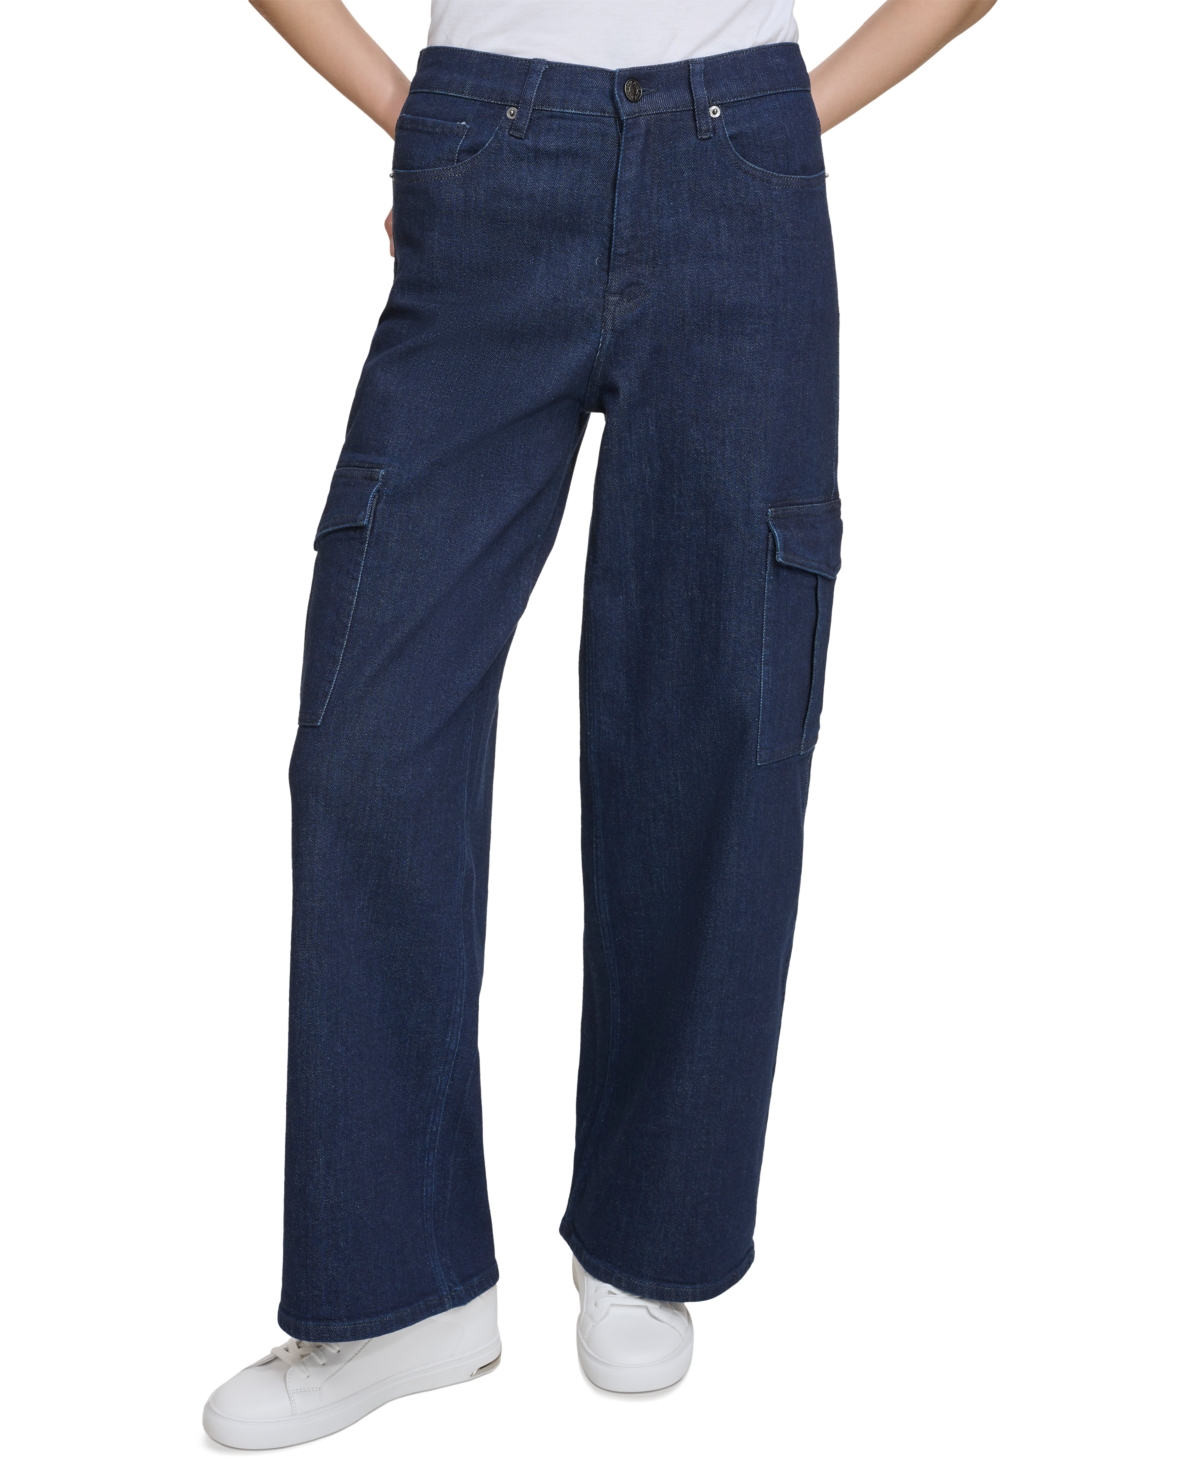 Women's High-Rise Wide-Leg Cargo Jeans - Lxt - Lexington